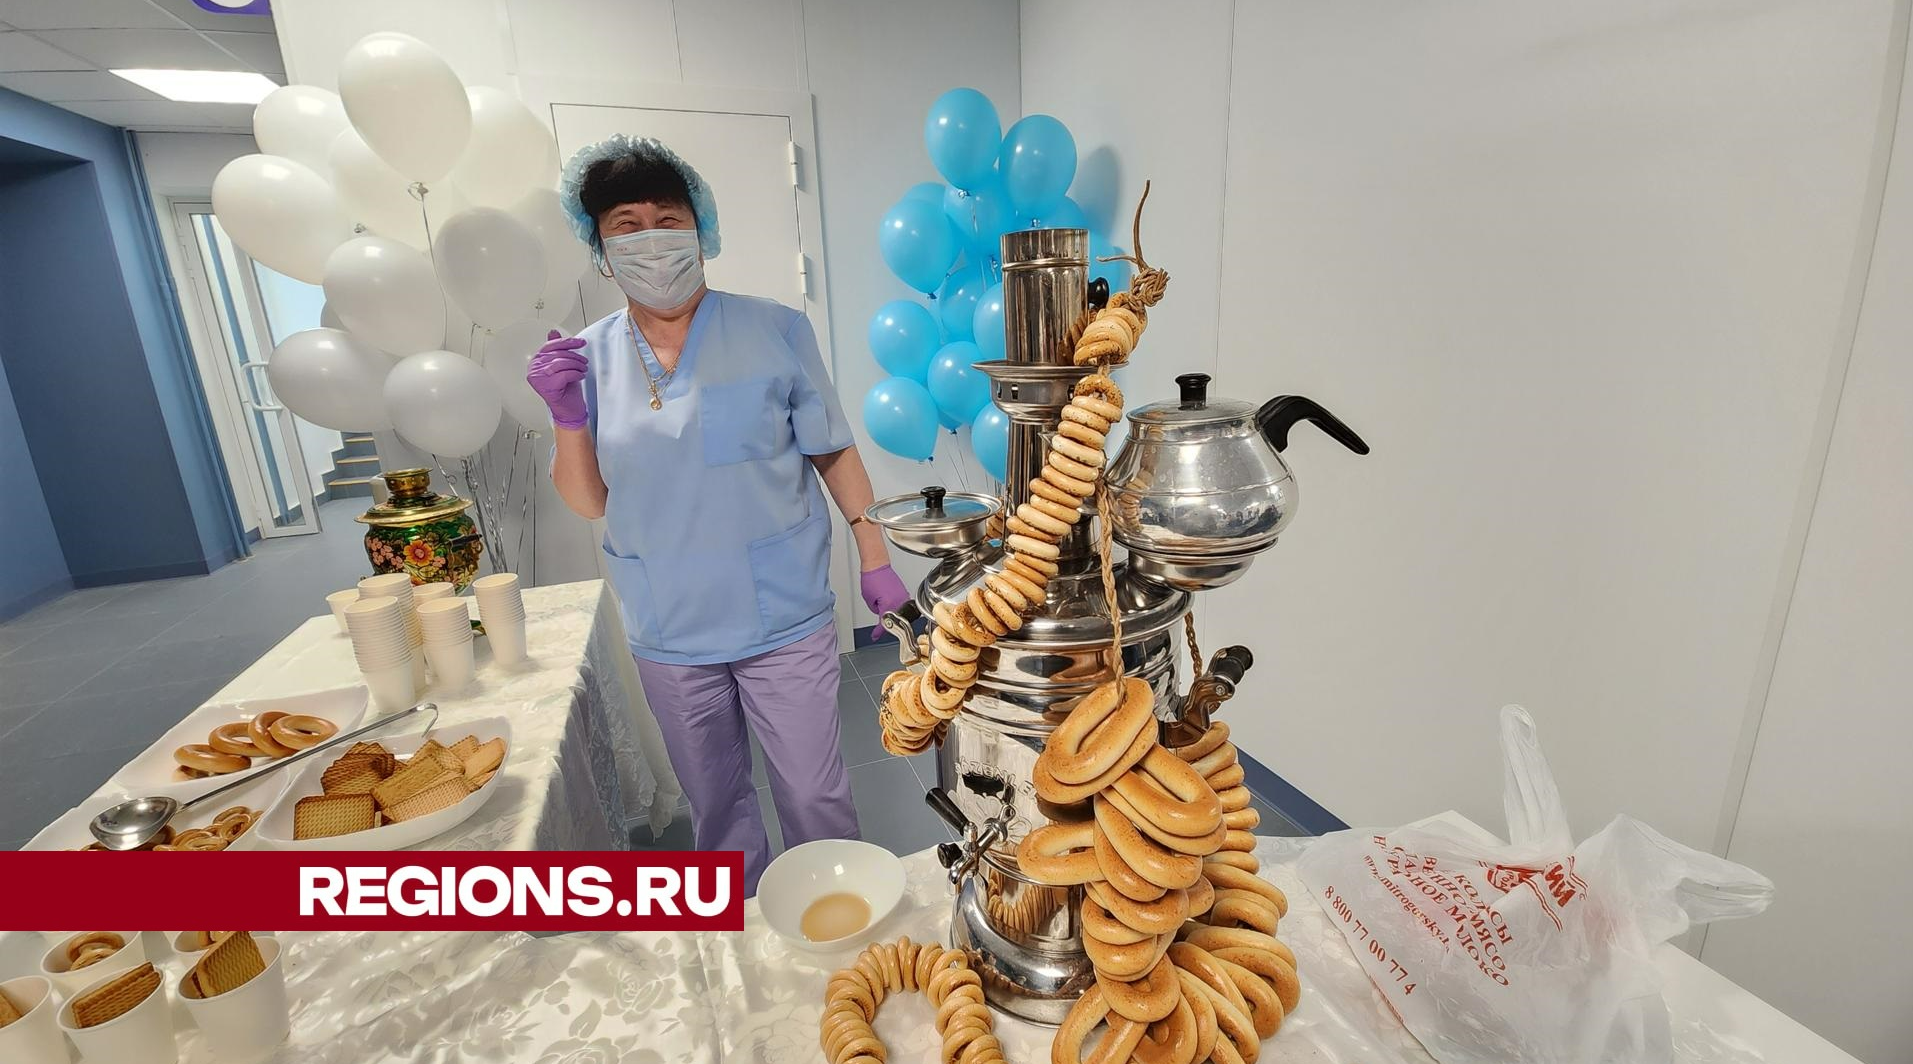 Пациентов обновленной поликлиники в Рекинцо угостили сладостями и чаем из самовара